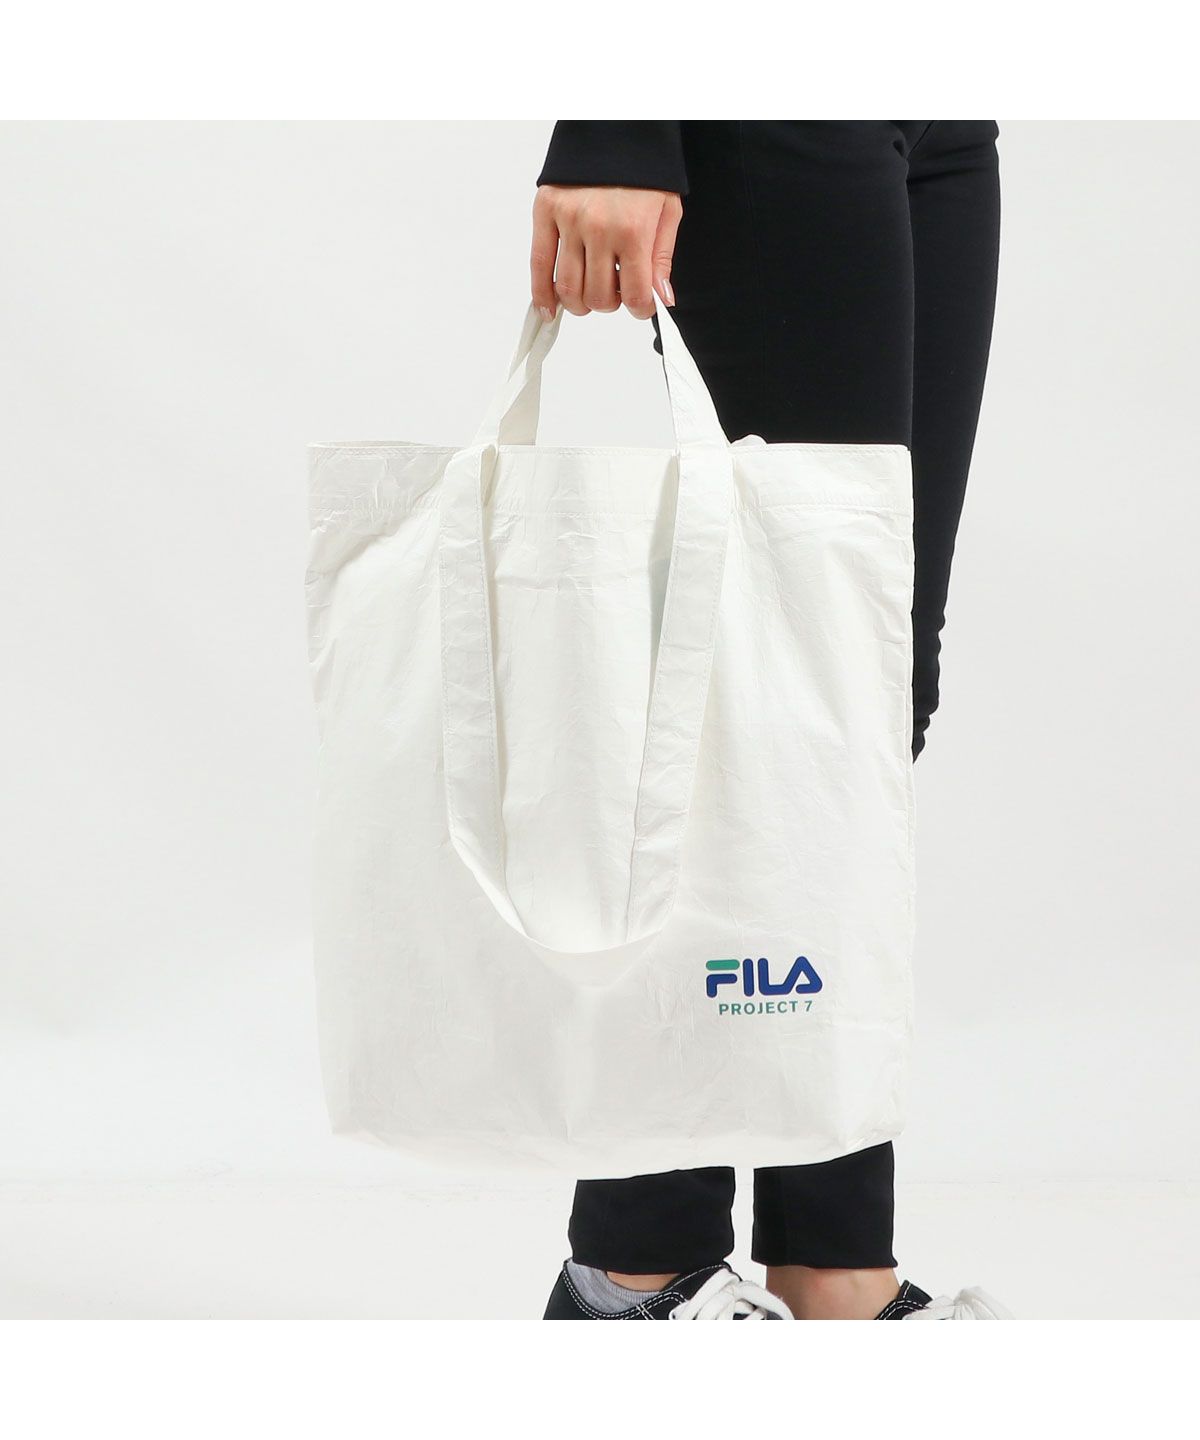 FILA PROJECT7 ウエストバッグ BTS着用モデル